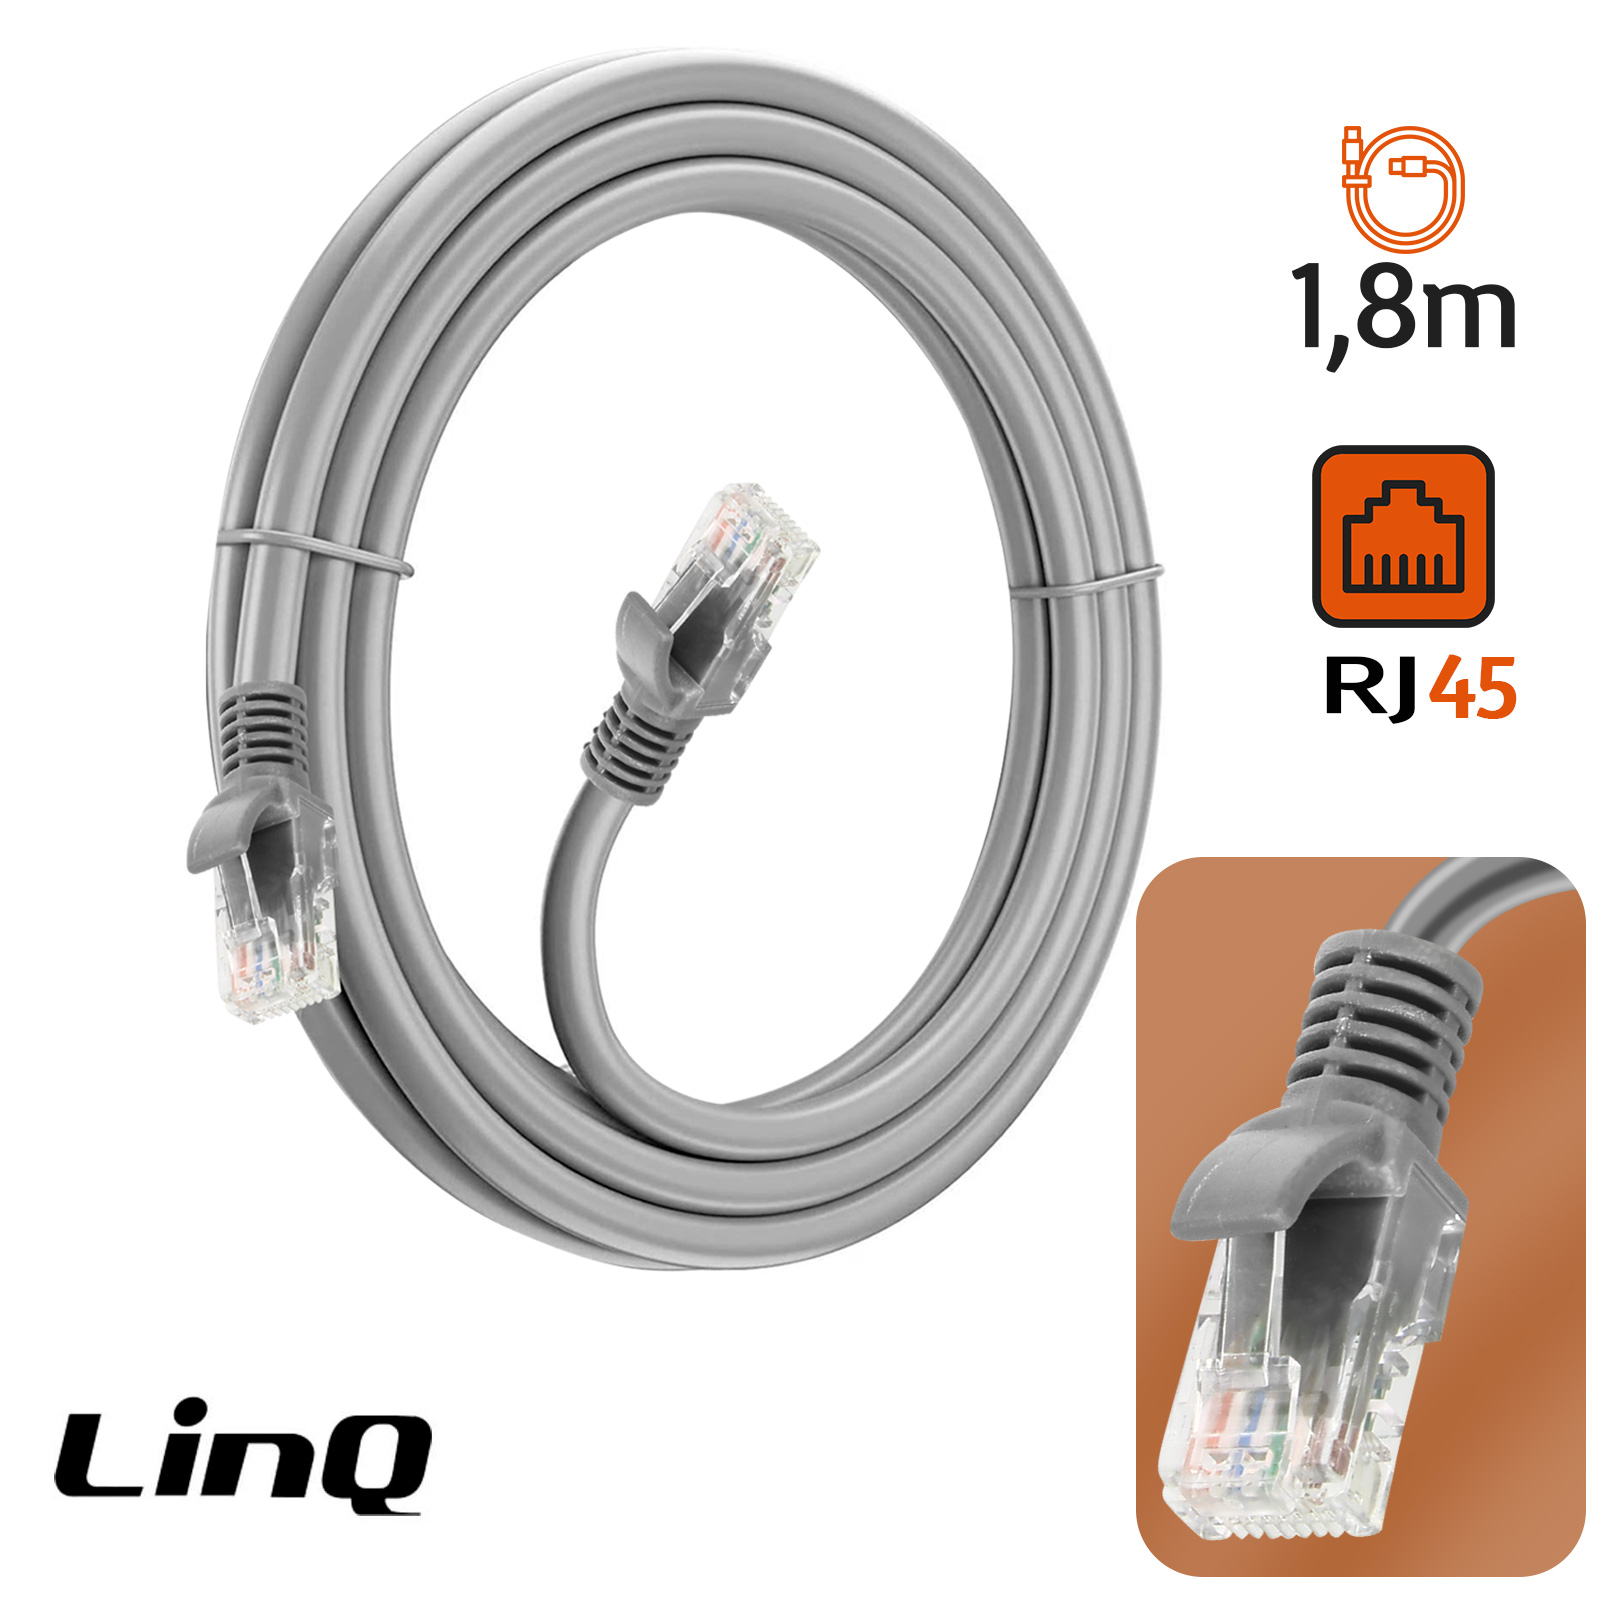 Câble Ethernet 1.8m, RJ45 Catégorie 6 Transfert 10Gbps - 250MHz, LinQ -  Gris - Français